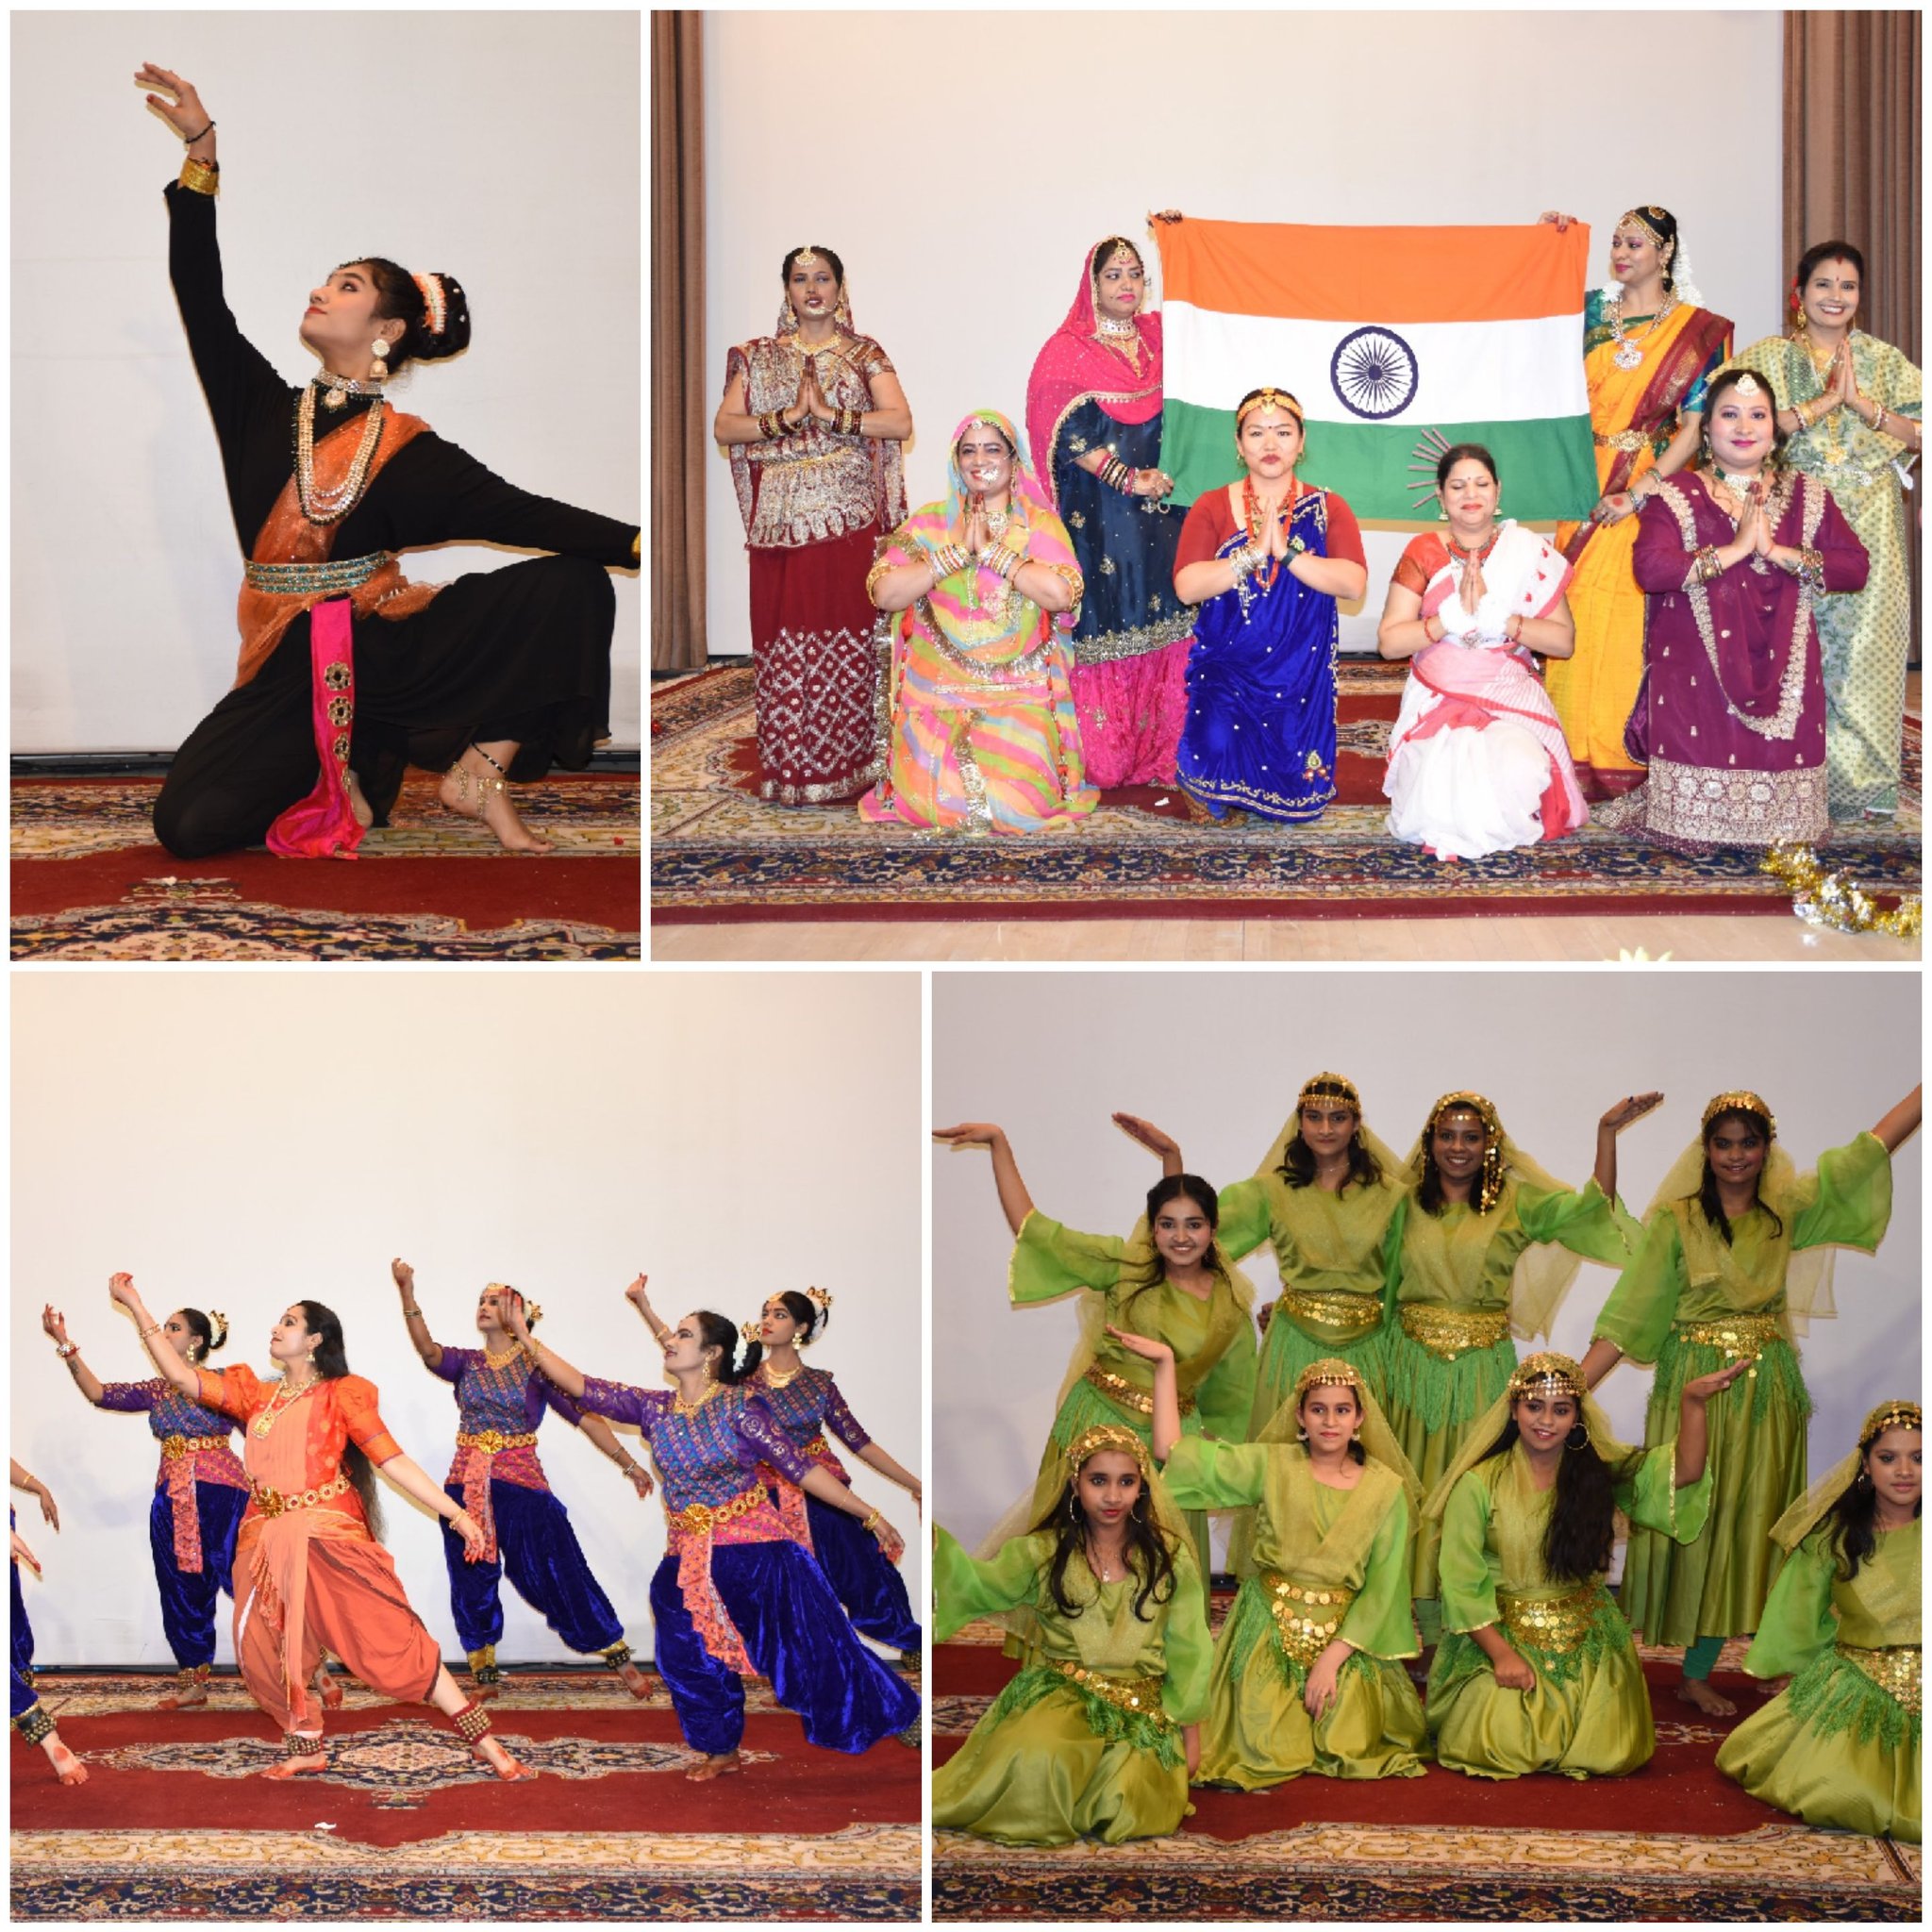 السفارة الهندية بالرياض تحتفل باليوم العالمي للمرأة